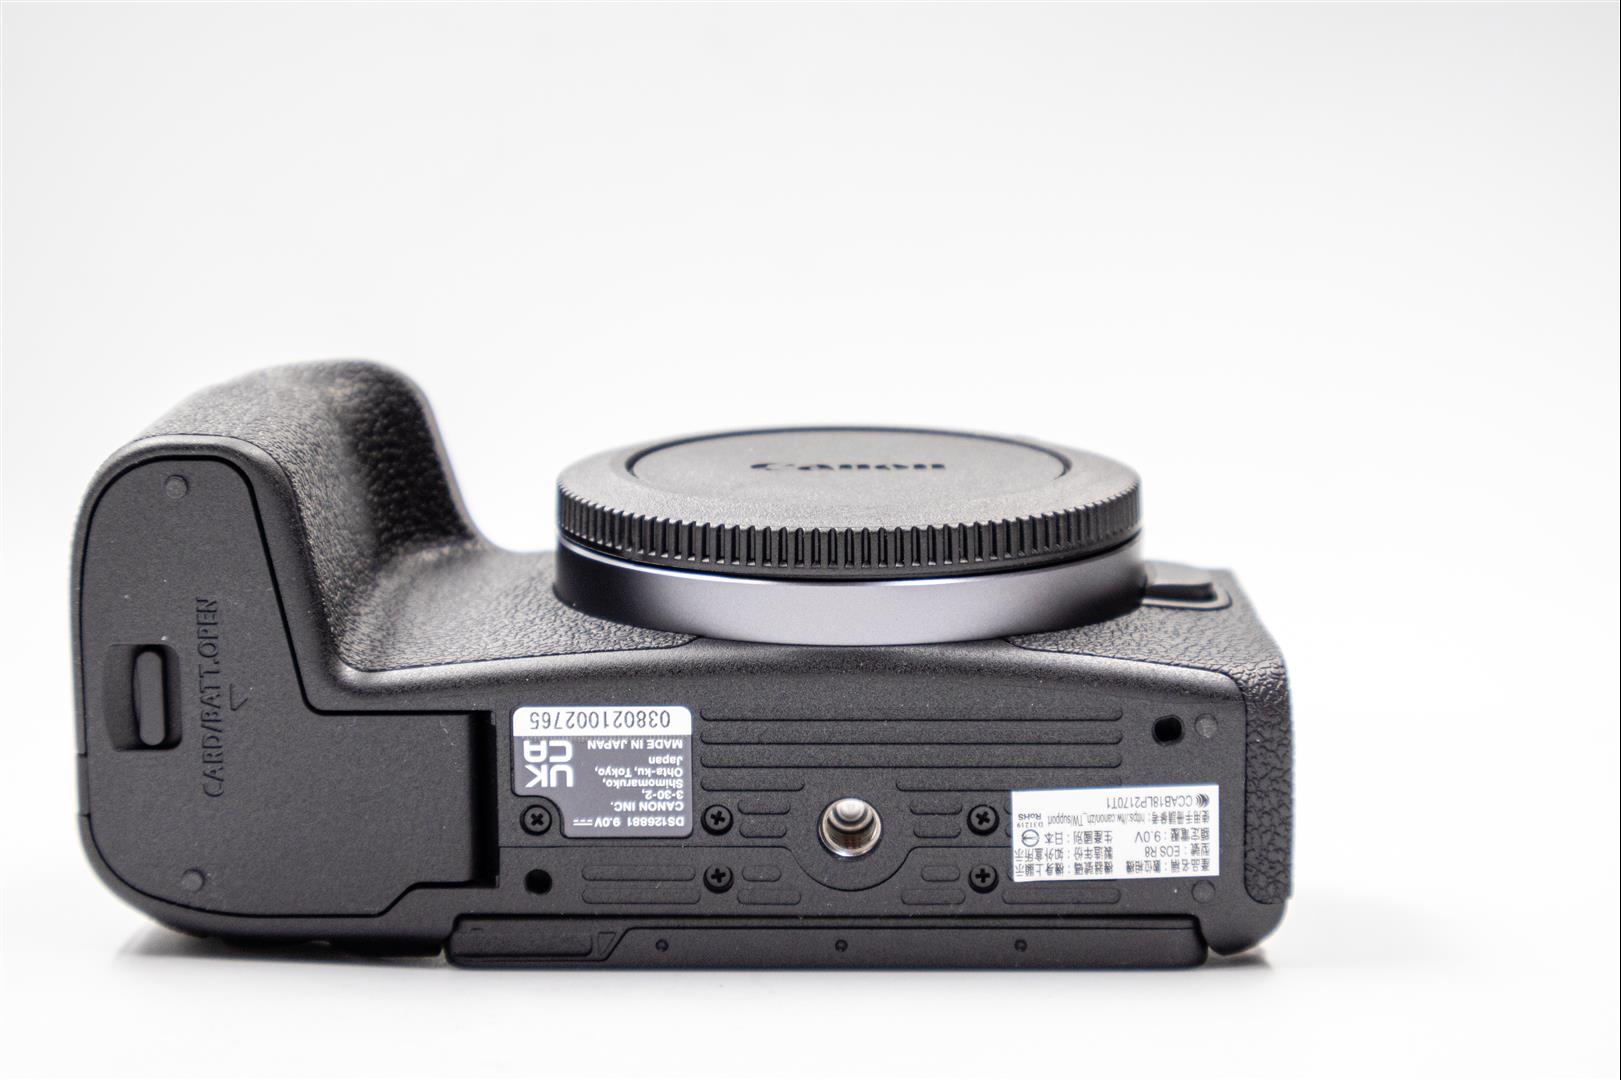 [比攝影126] 專業未滿，水準之上，Canon EOS R8 開箱介紹